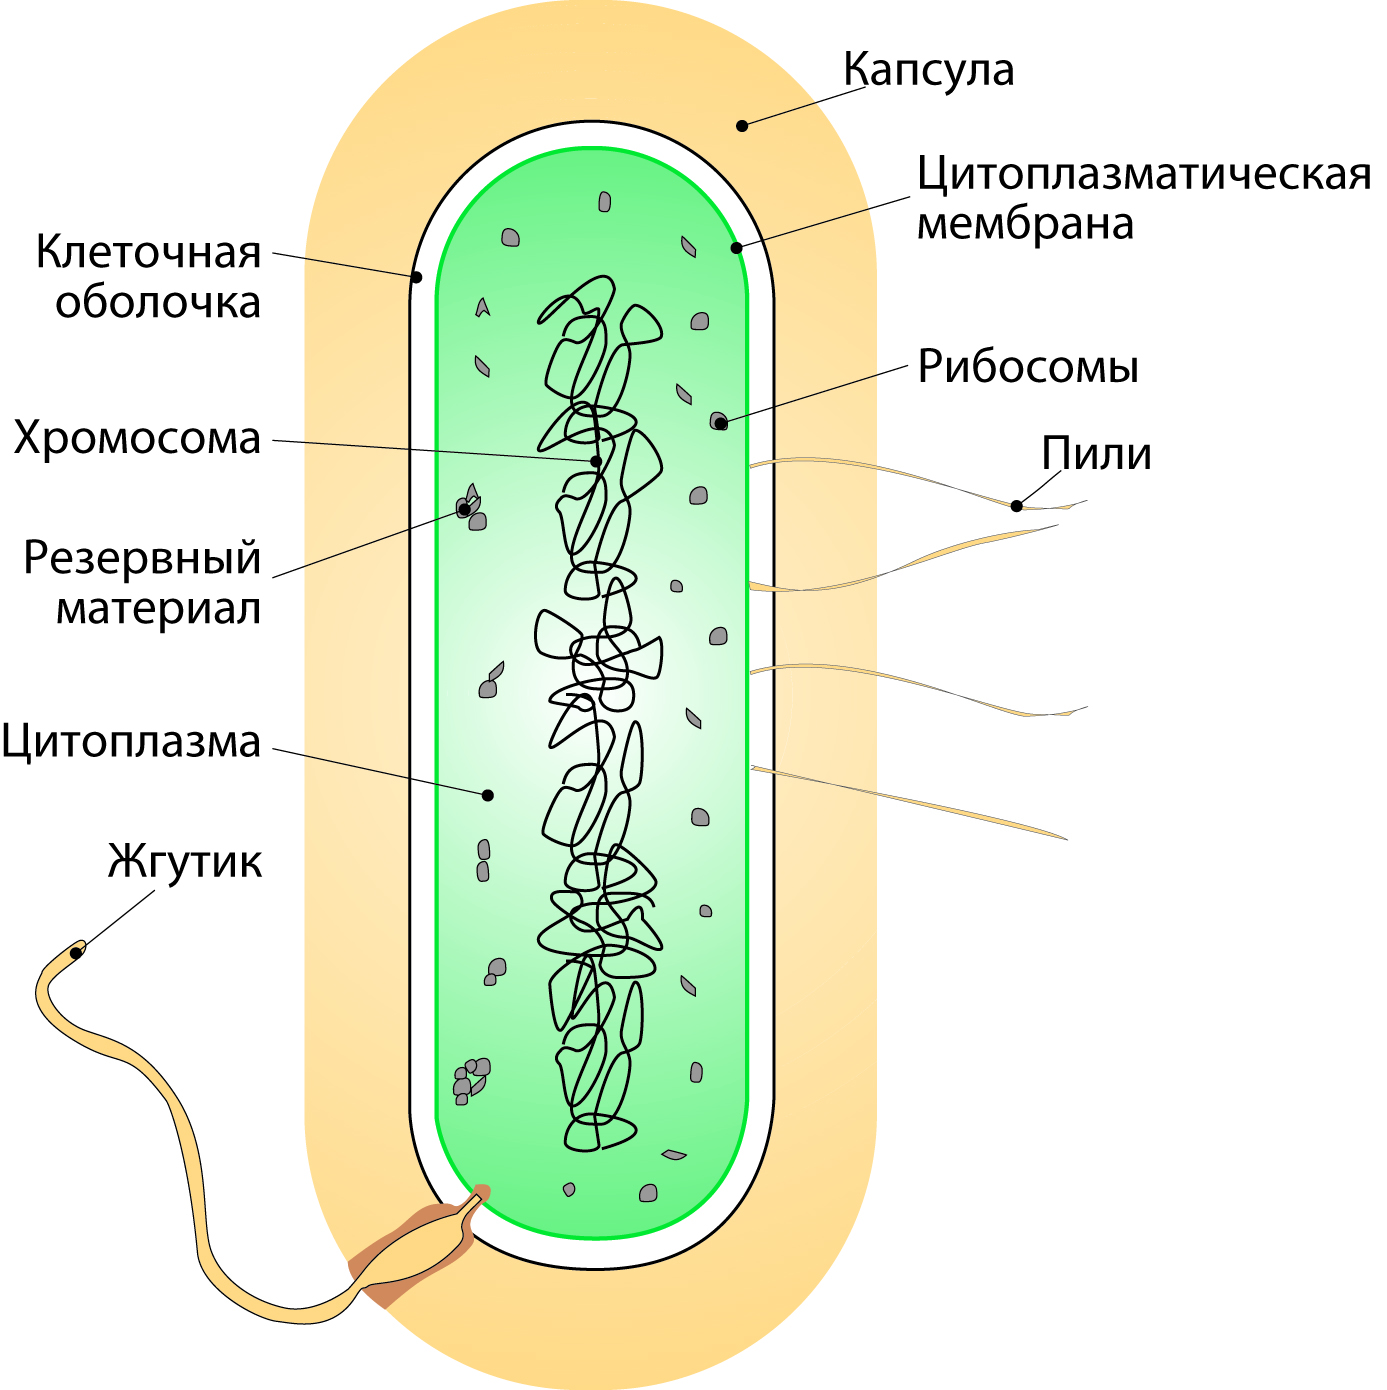 В клетках бактерий есть ядро